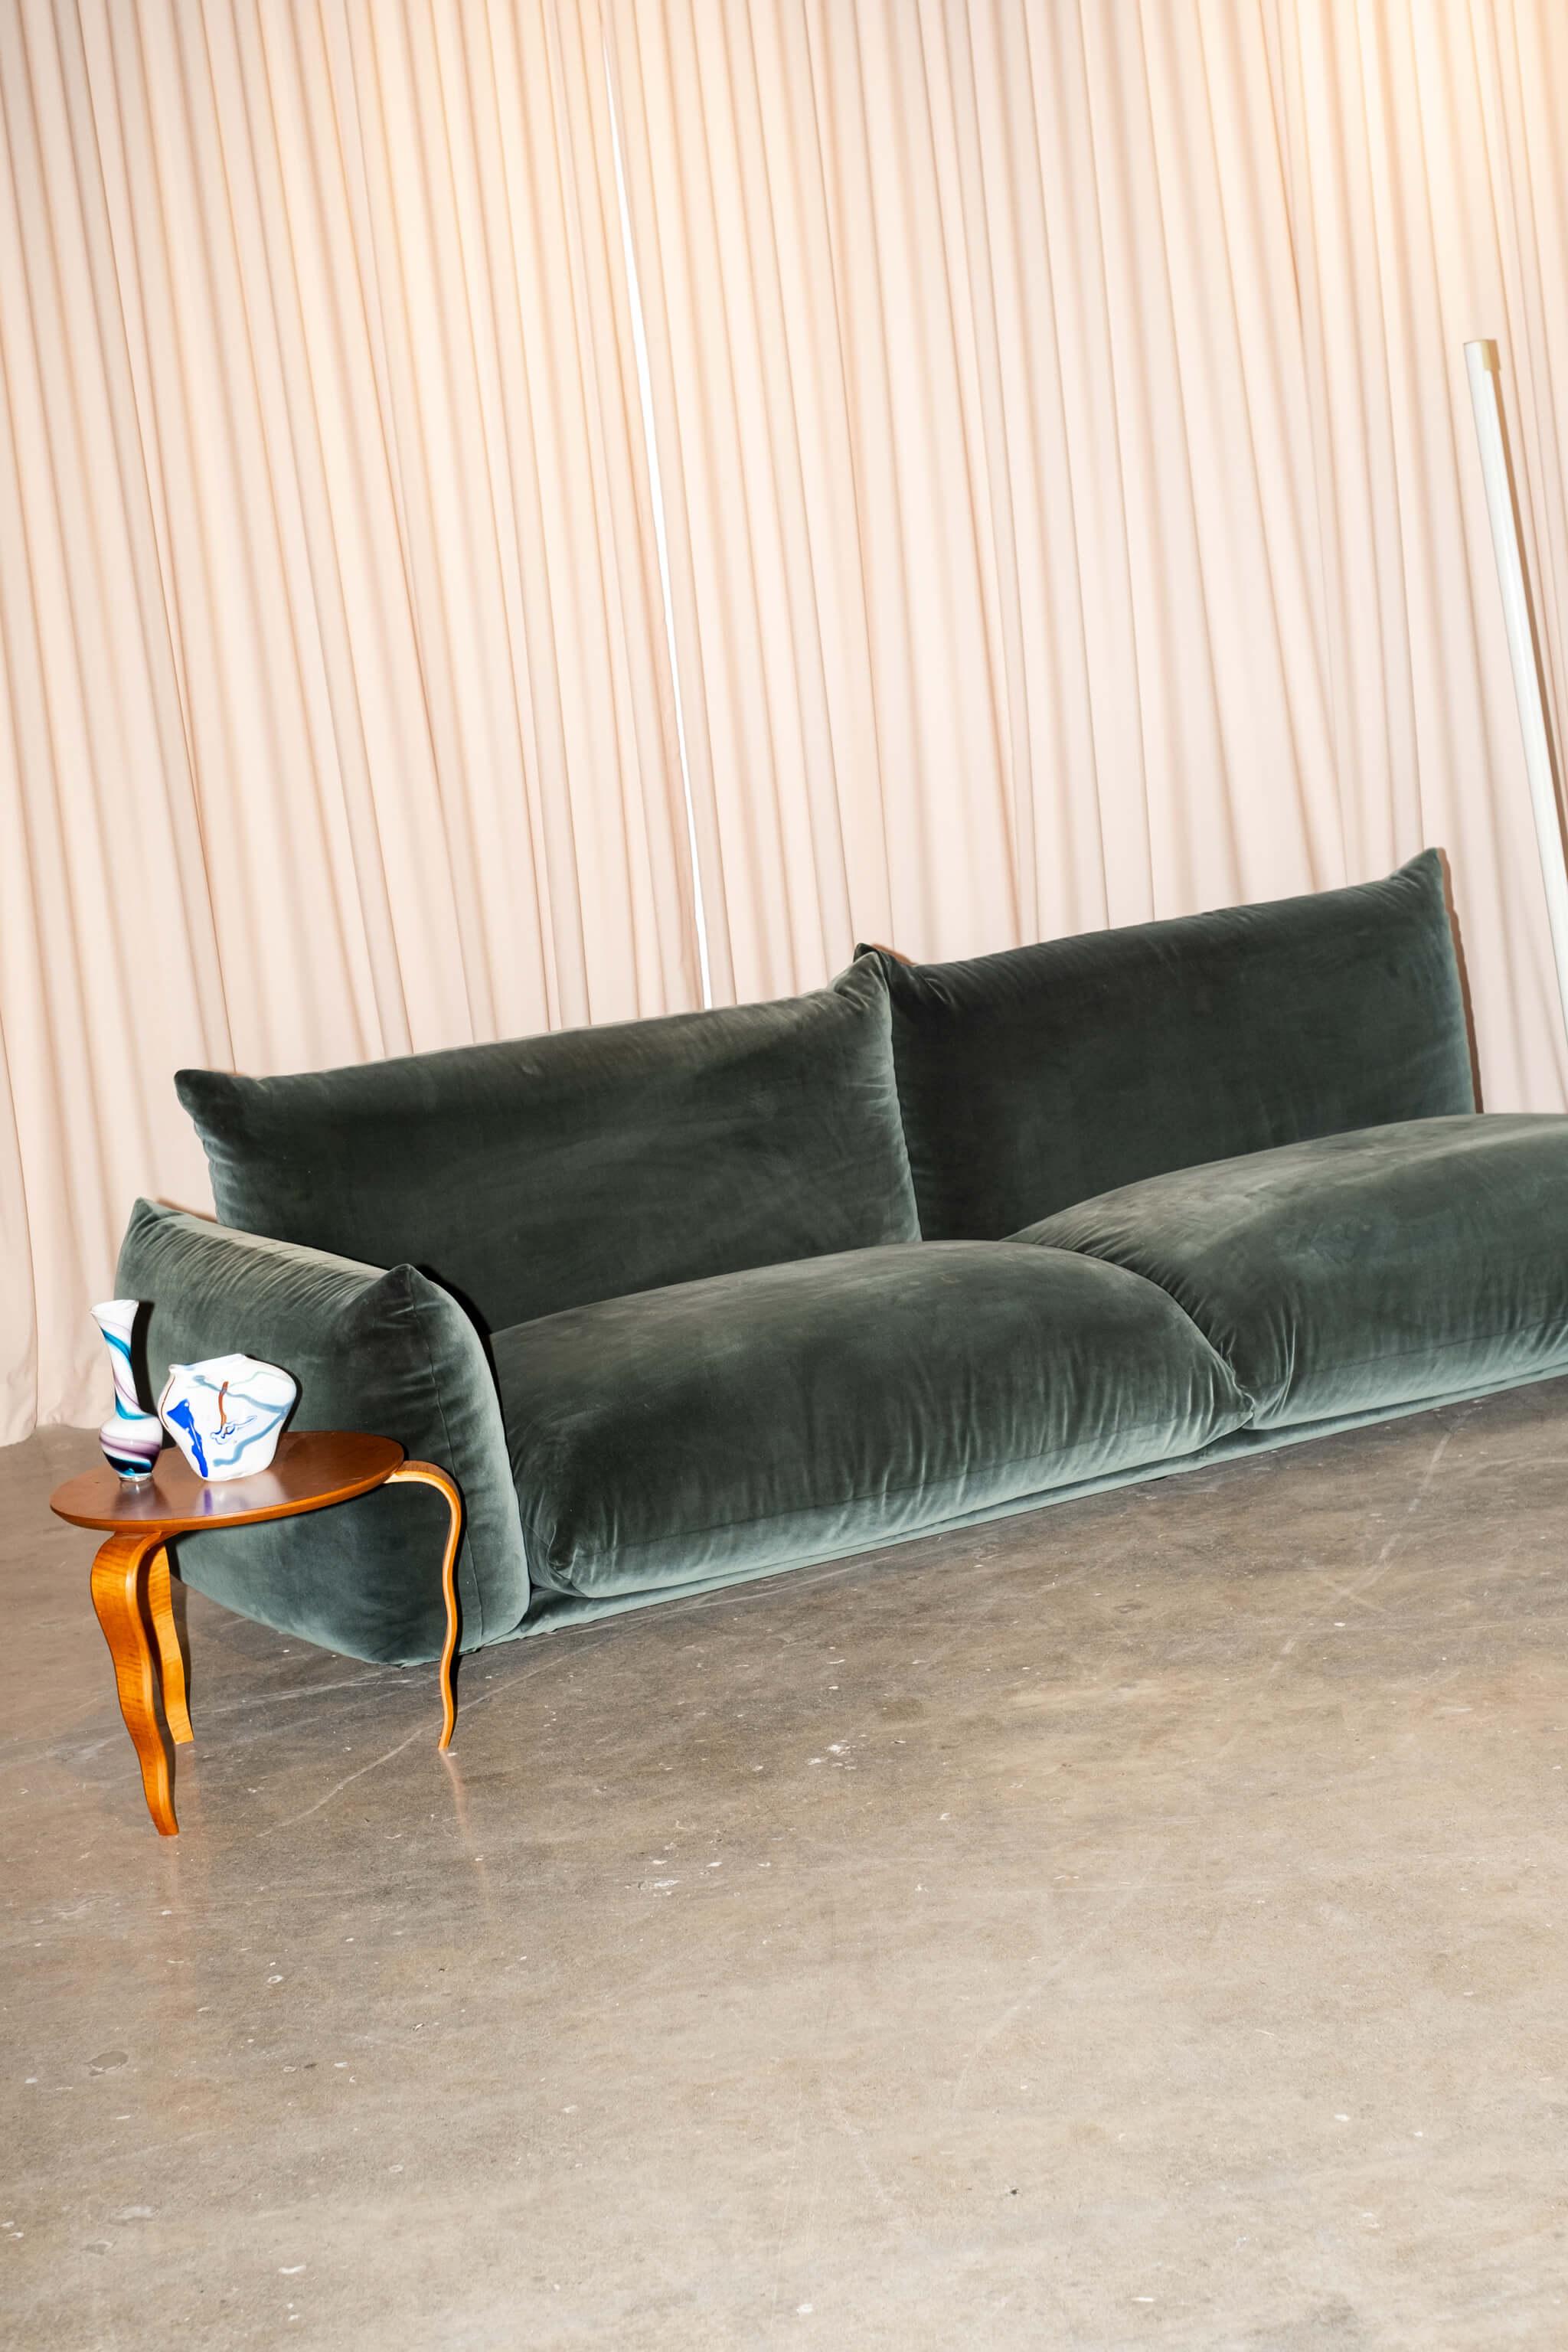 Conçu à l'origine par Mario Marenco en 1970, le canapé homonyme est devenu culte. Le design arrondi unique et la grande modularité font encore du canapé Marenco un must du mobilier contemporain.

L'échelle du Marenco n'est pas timide. (Bien que nous